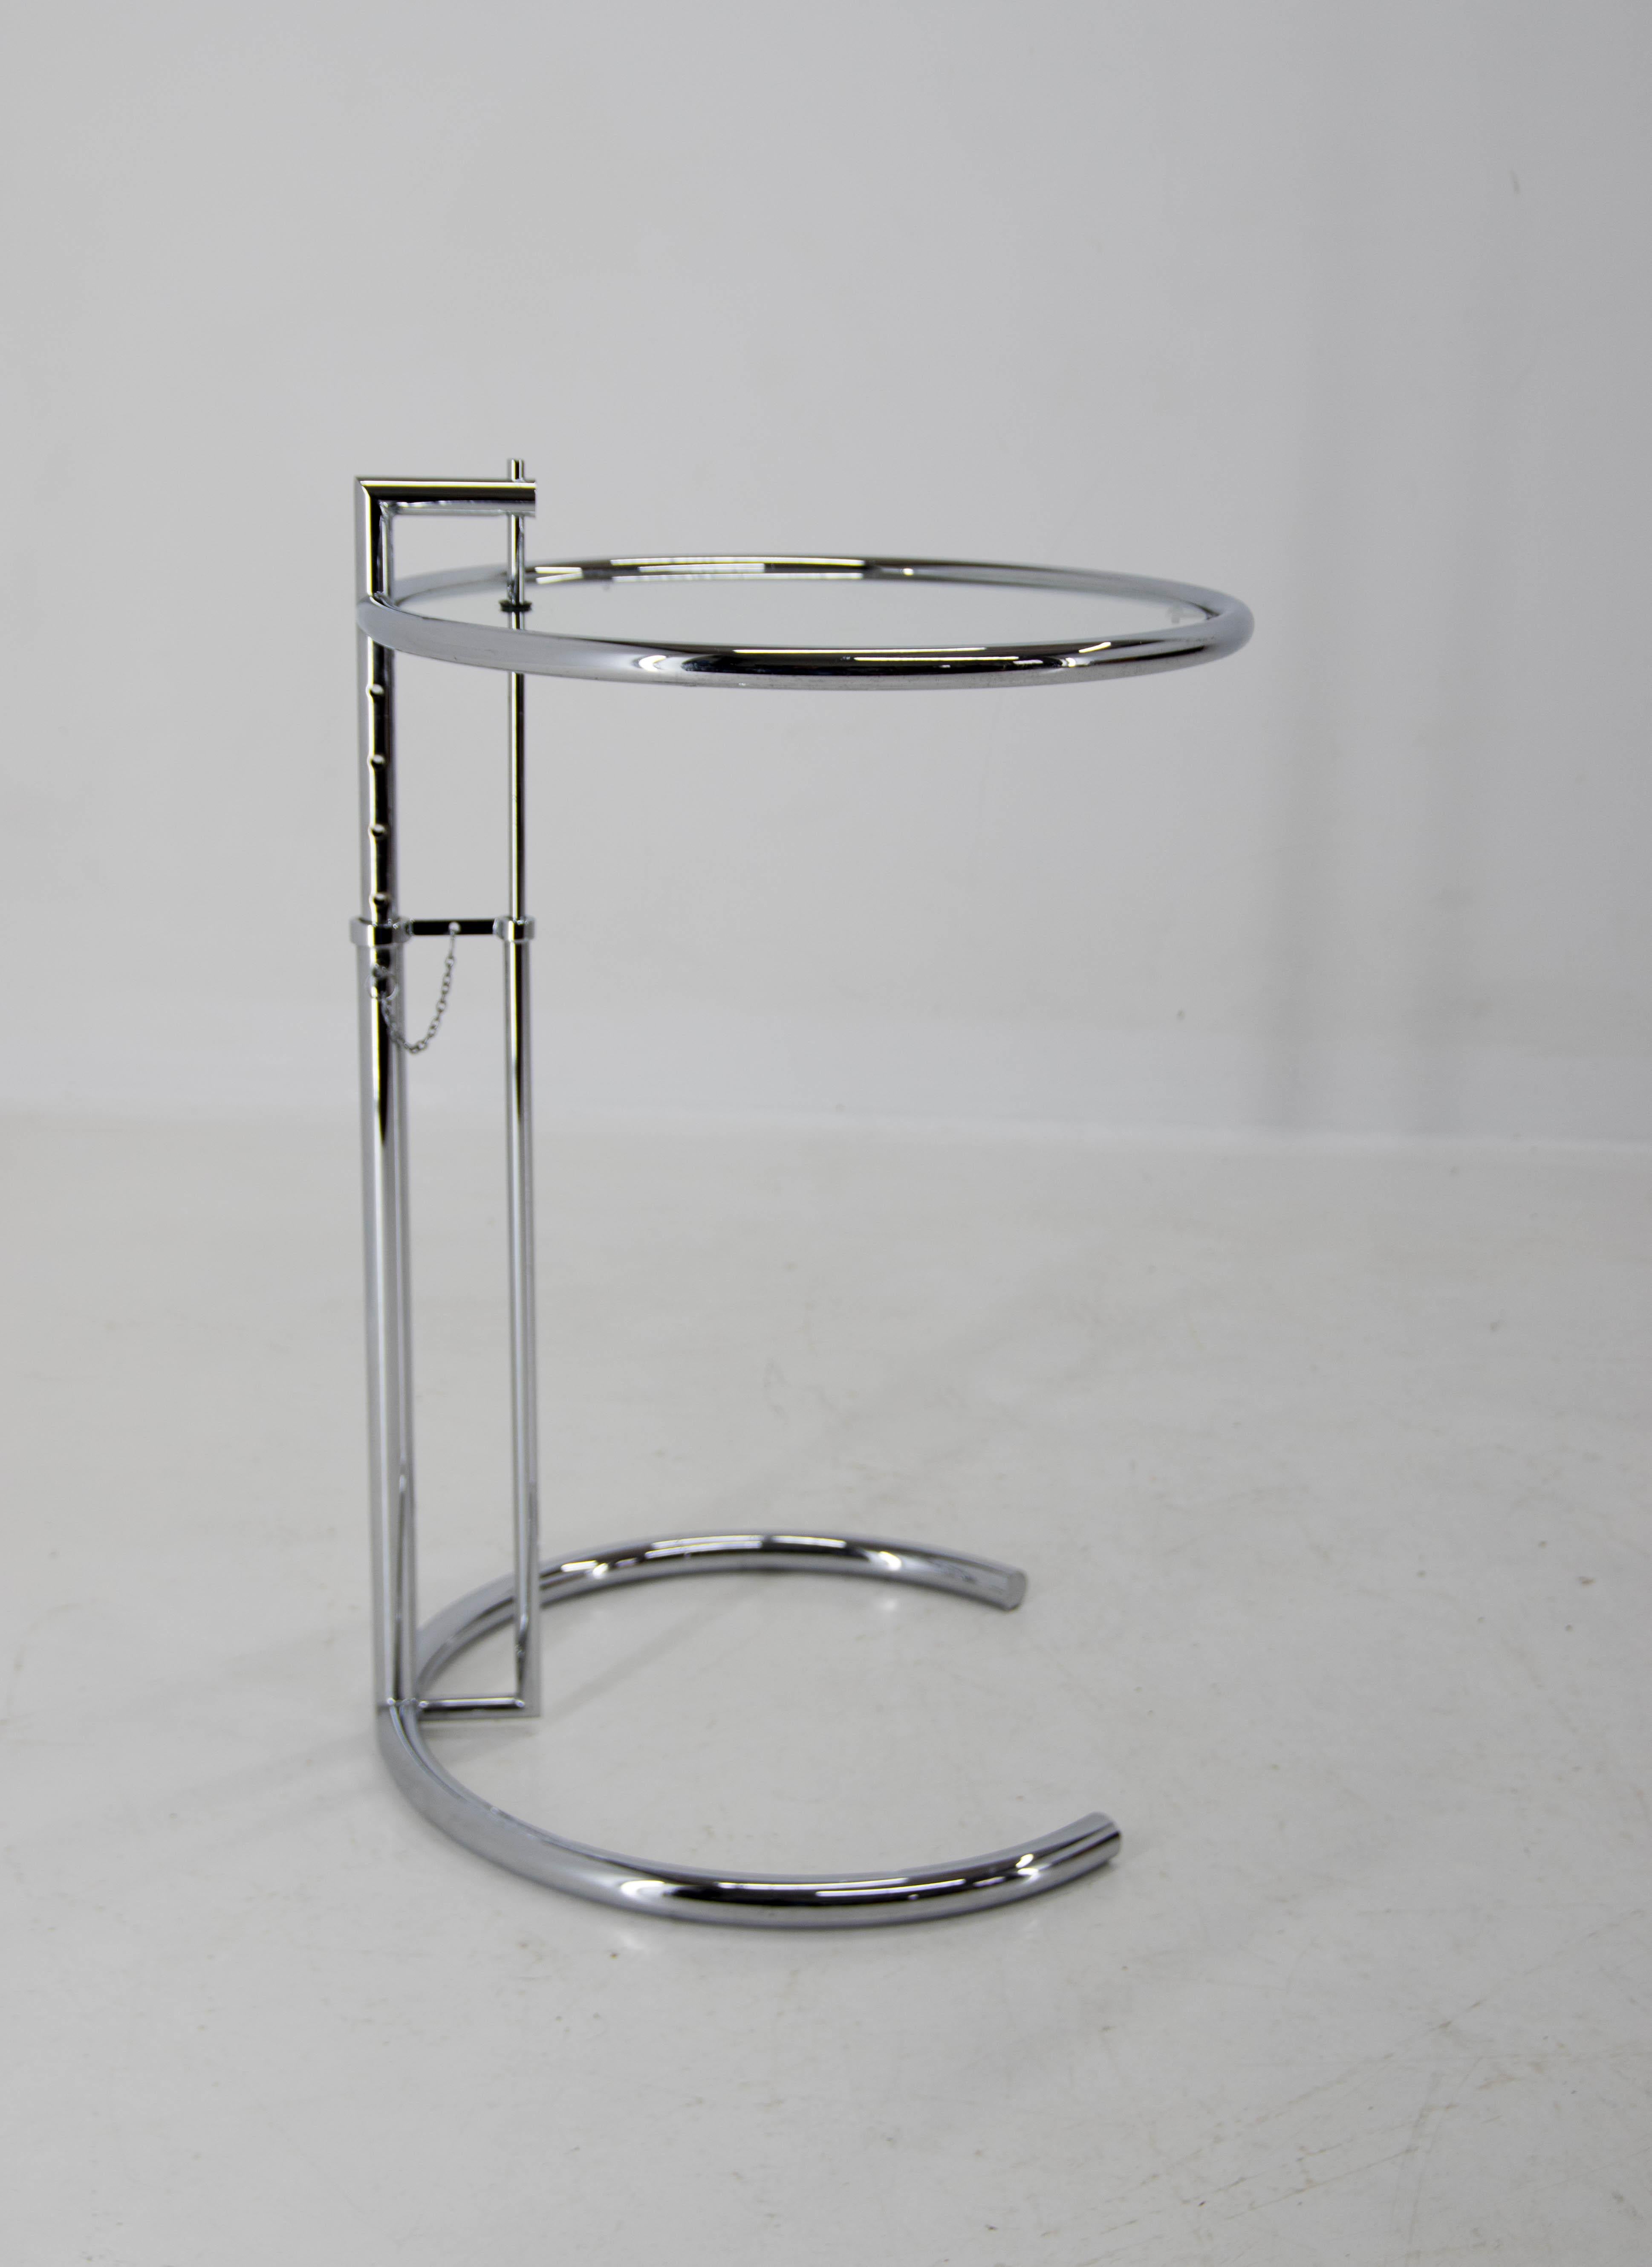 Verstellbarer Tisch E 1027 aus Chrom und Kristall von Eileen Gray (Bauhaus)